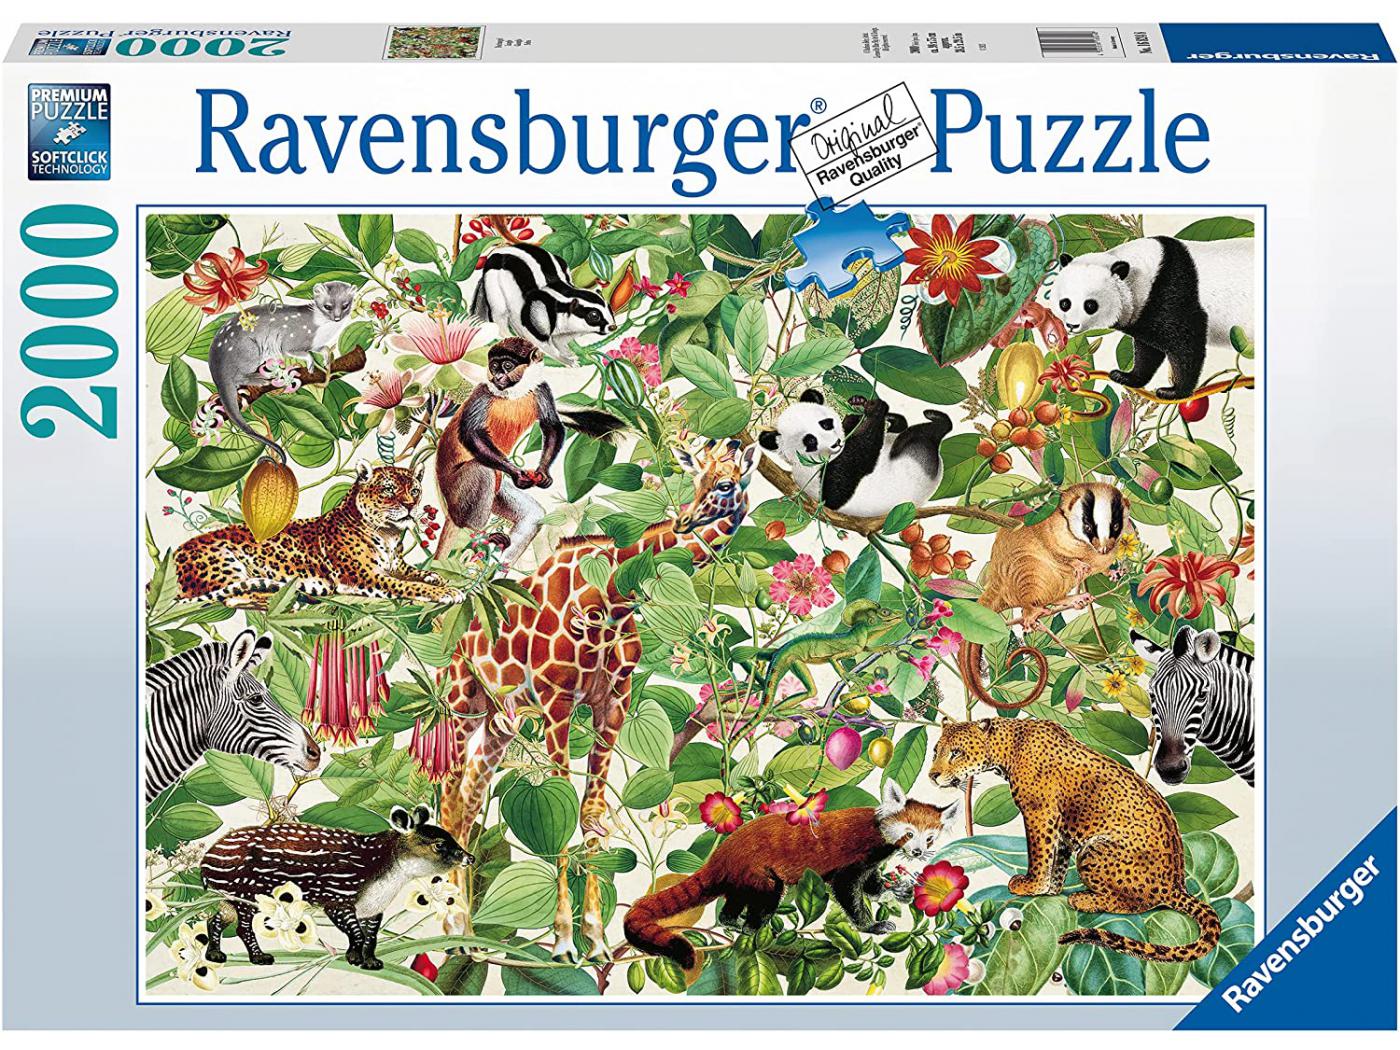 Ravensburger - Puzzles adultes - Puzzle 2000 pièces - Jungle